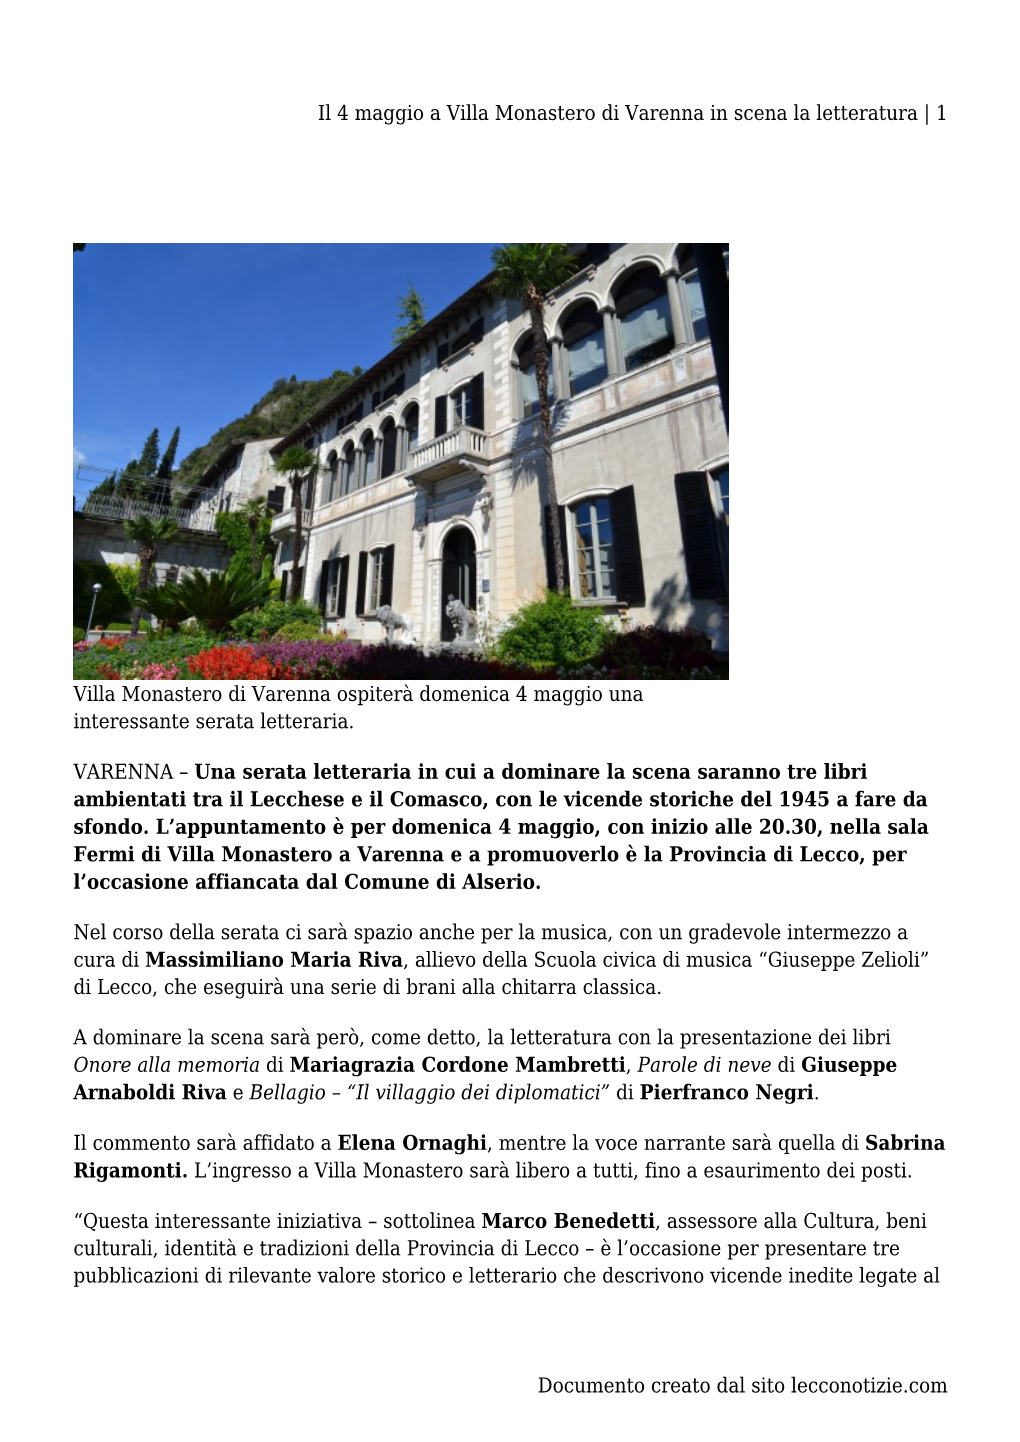 Il 4 Maggio a Villa Monastero Di Varenna in Scena La Letteratura | 1